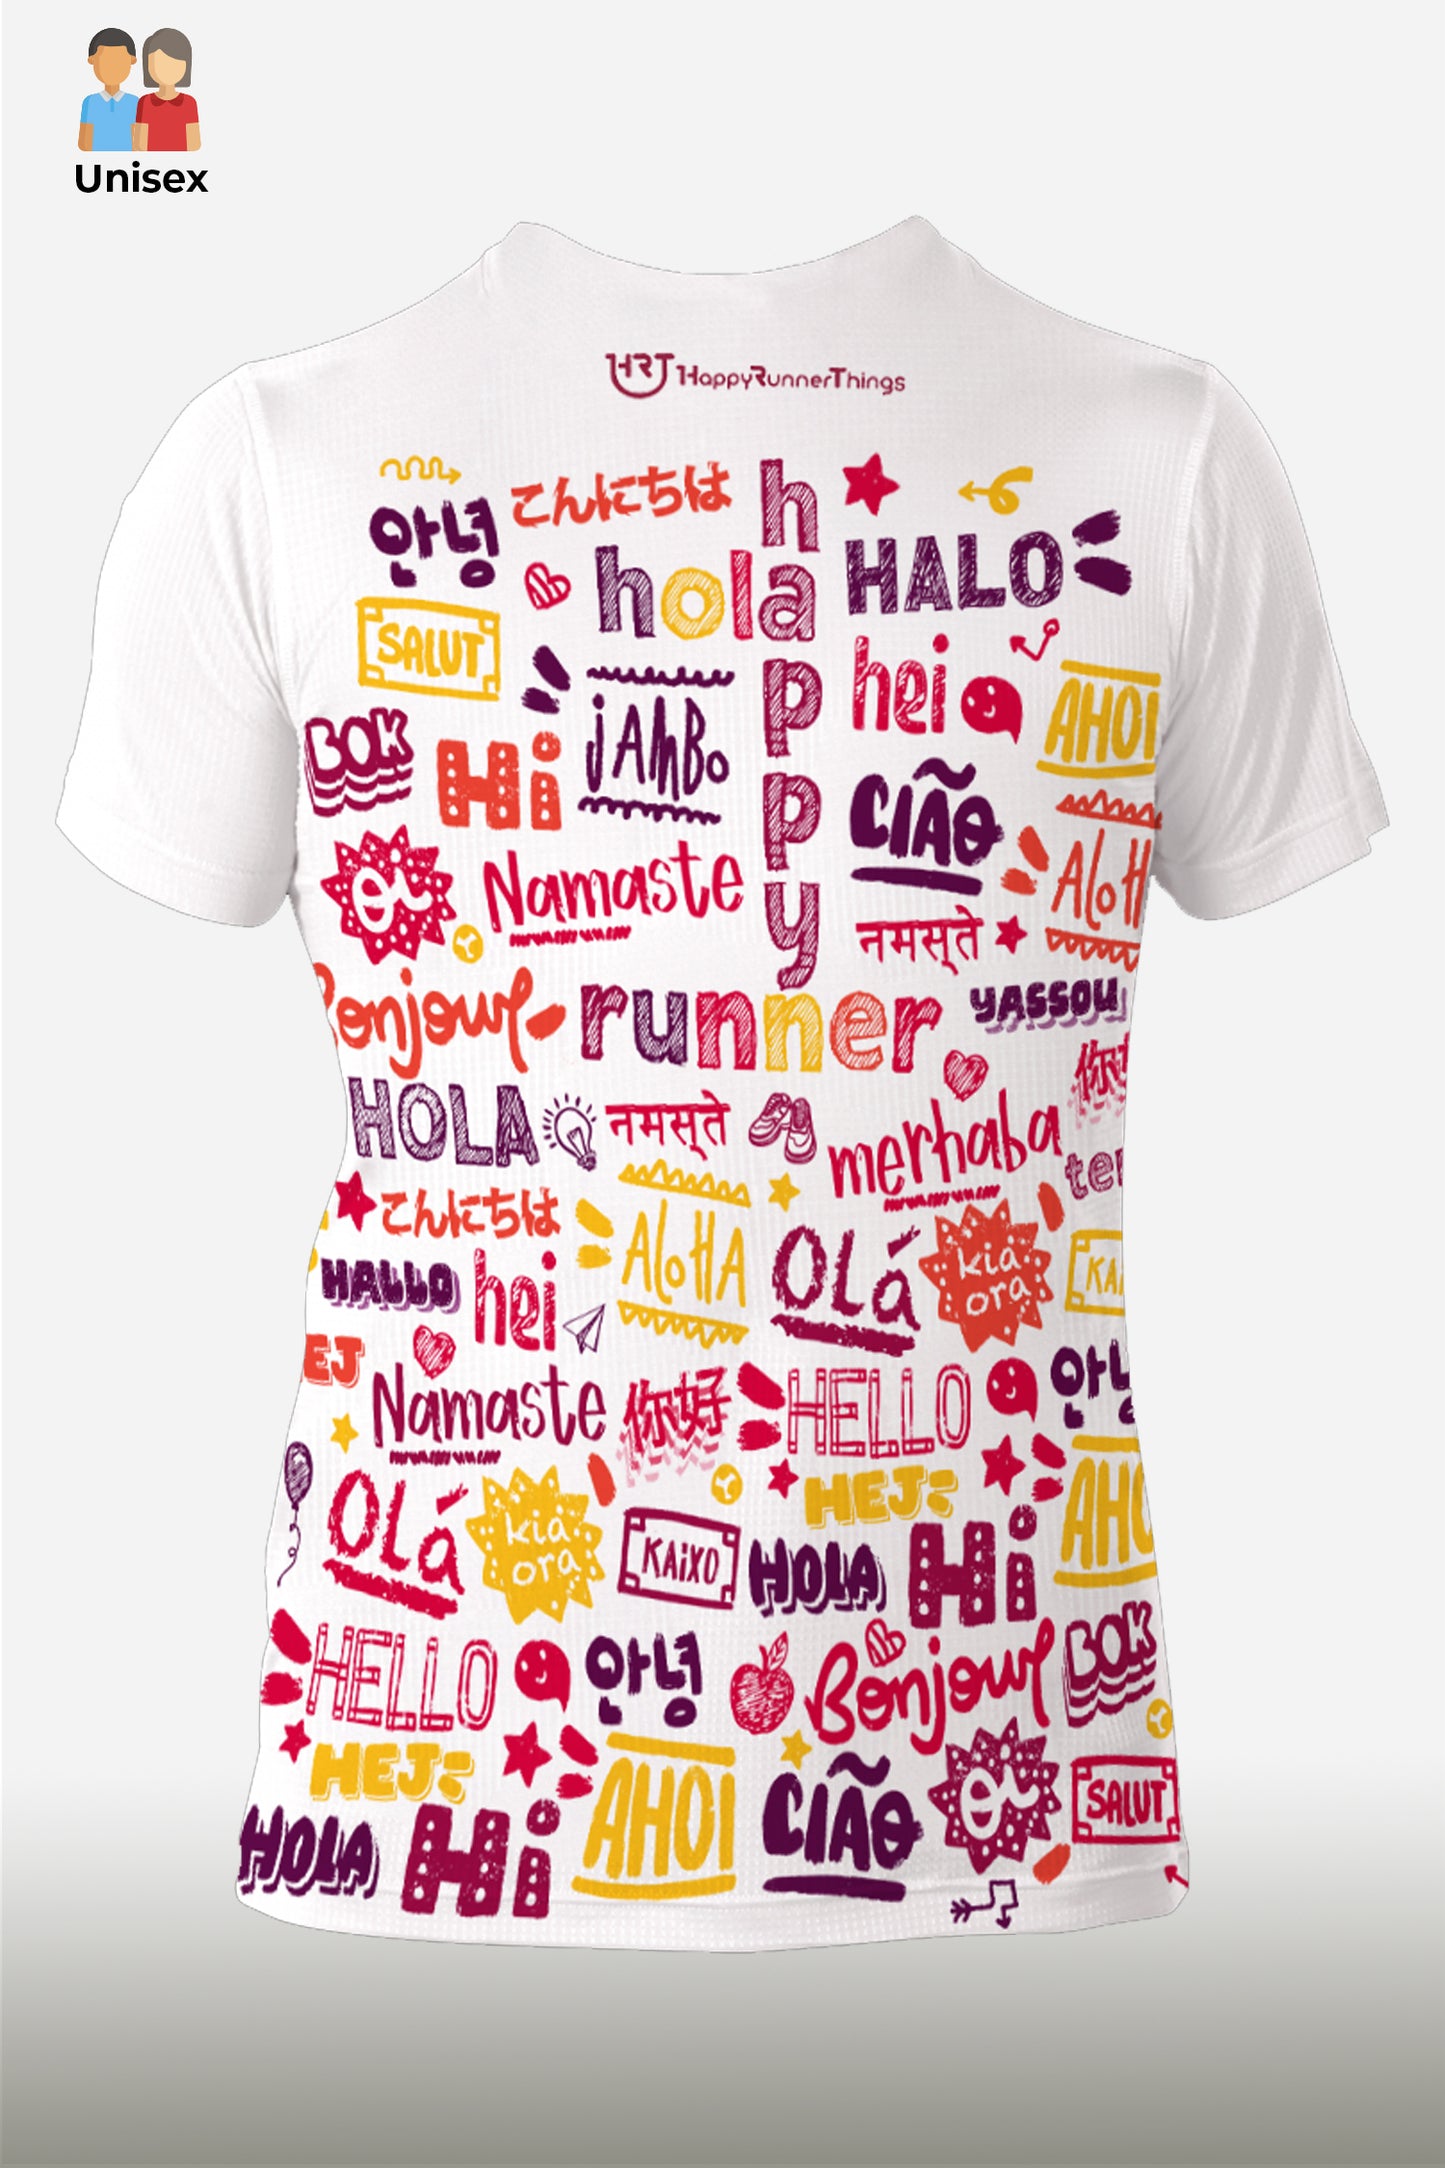 Hola Runner - Camiseta Running Unisex